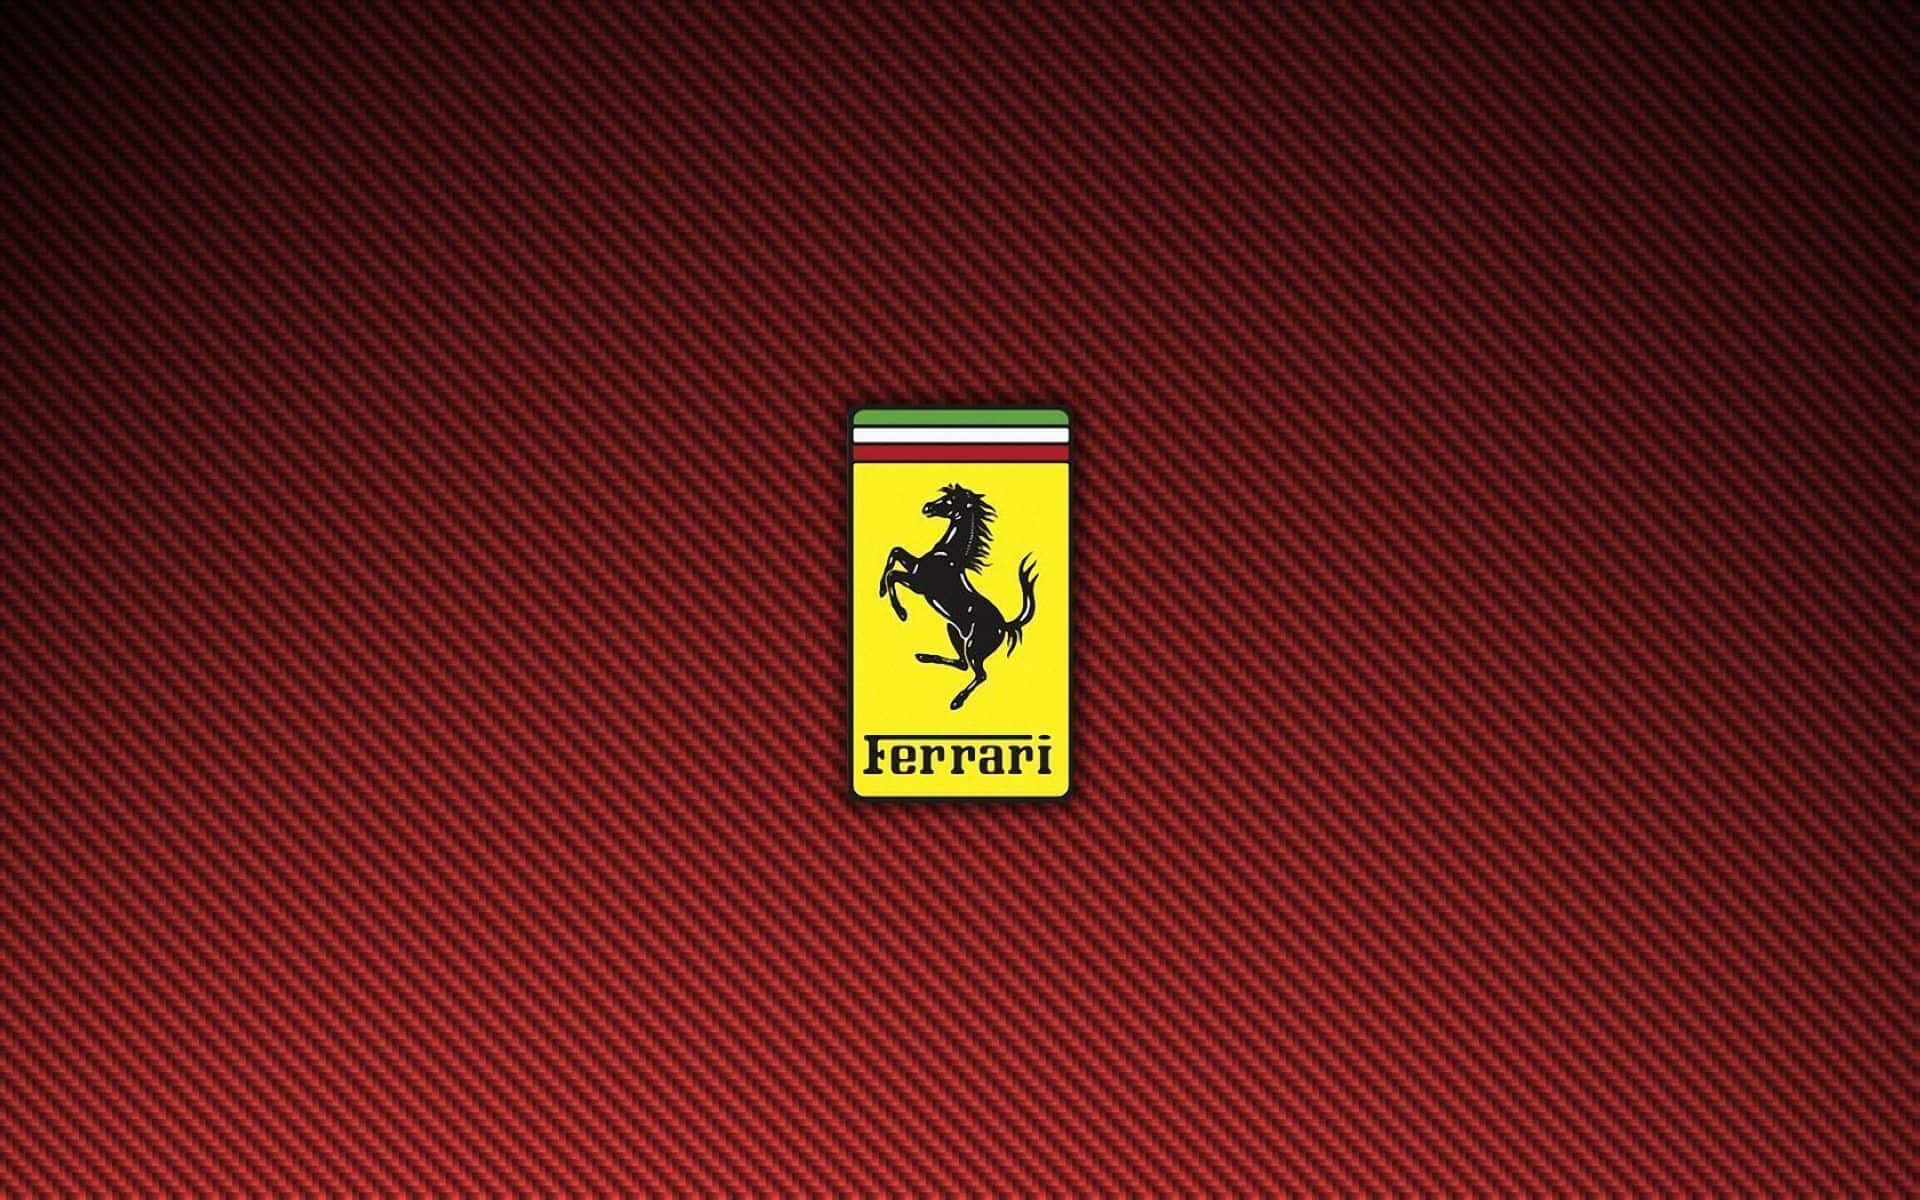 Ferrarilogo-hintergrundbilder Hd-wallpaper Ferrari-logo-hintergrundbilder Ferrari-logo-wallpaper Ferrari-logo-hintergrundbilder Ferrari-logo-wallpaper Ferrari